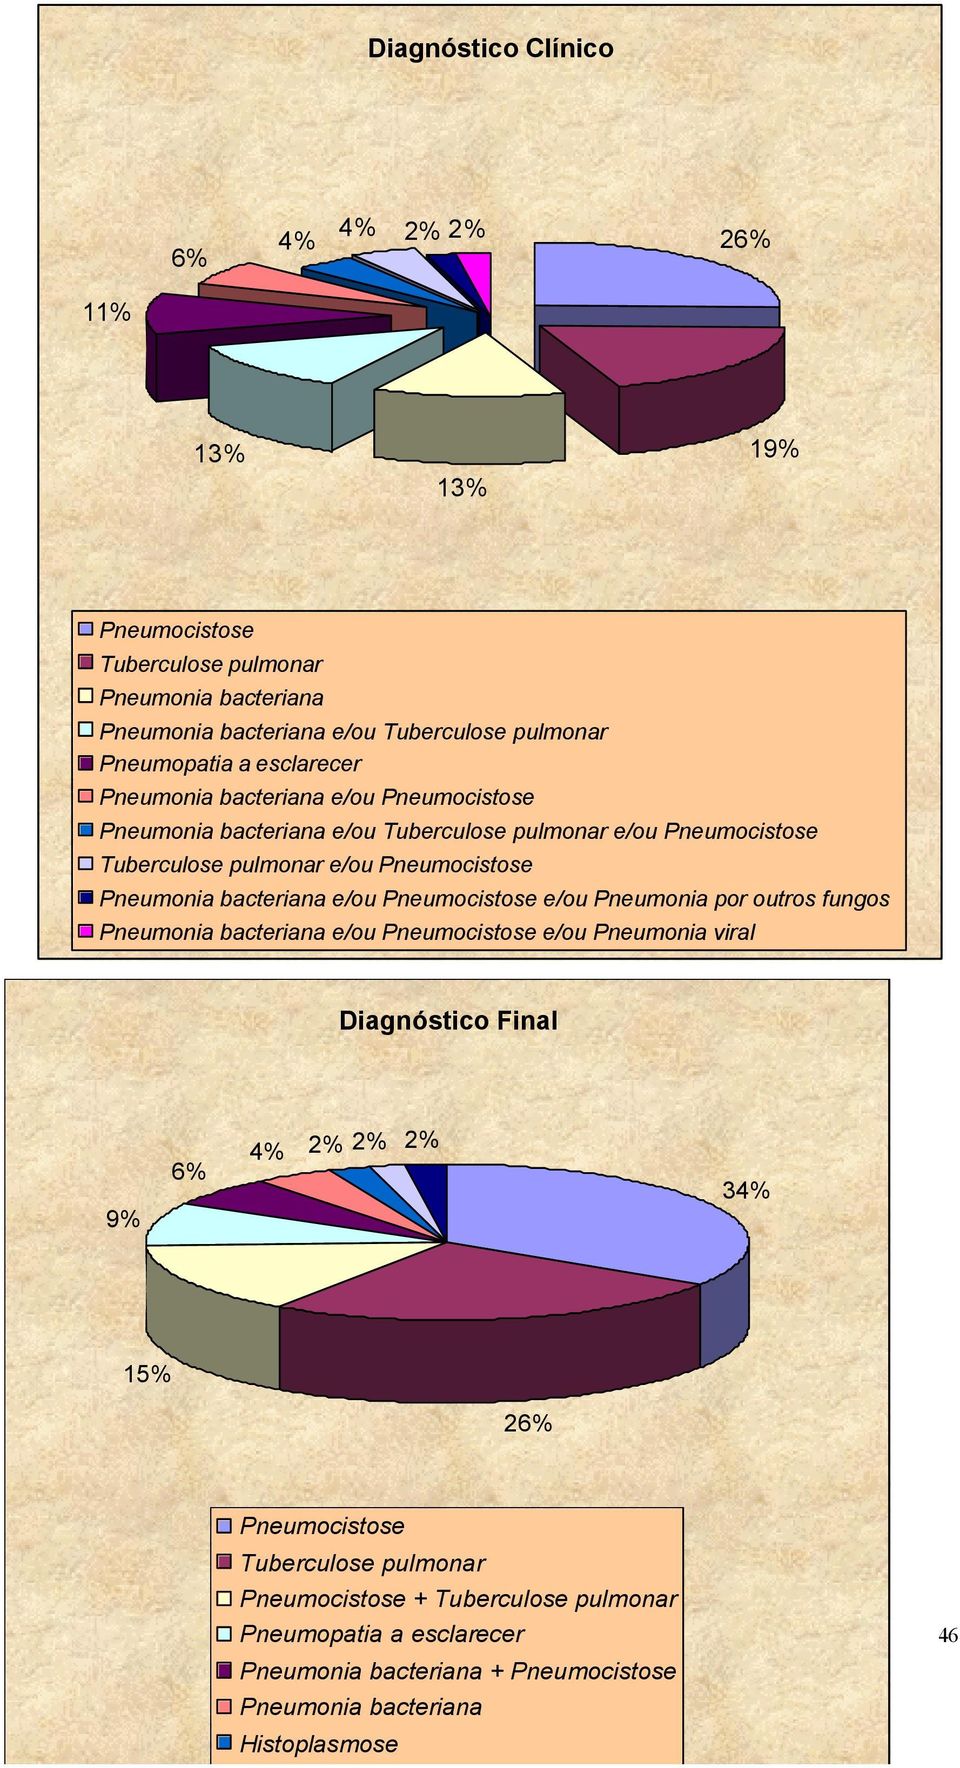 bacteriana e/ou Pneumocistose e/ou Pneumonia por outros fungos Pneumonia bacteriana e/ou Pneumocistose e/ou Pneumonia viral Diagnóstico Final 9% 6% 4% 2% 2% 2% 34% 15%